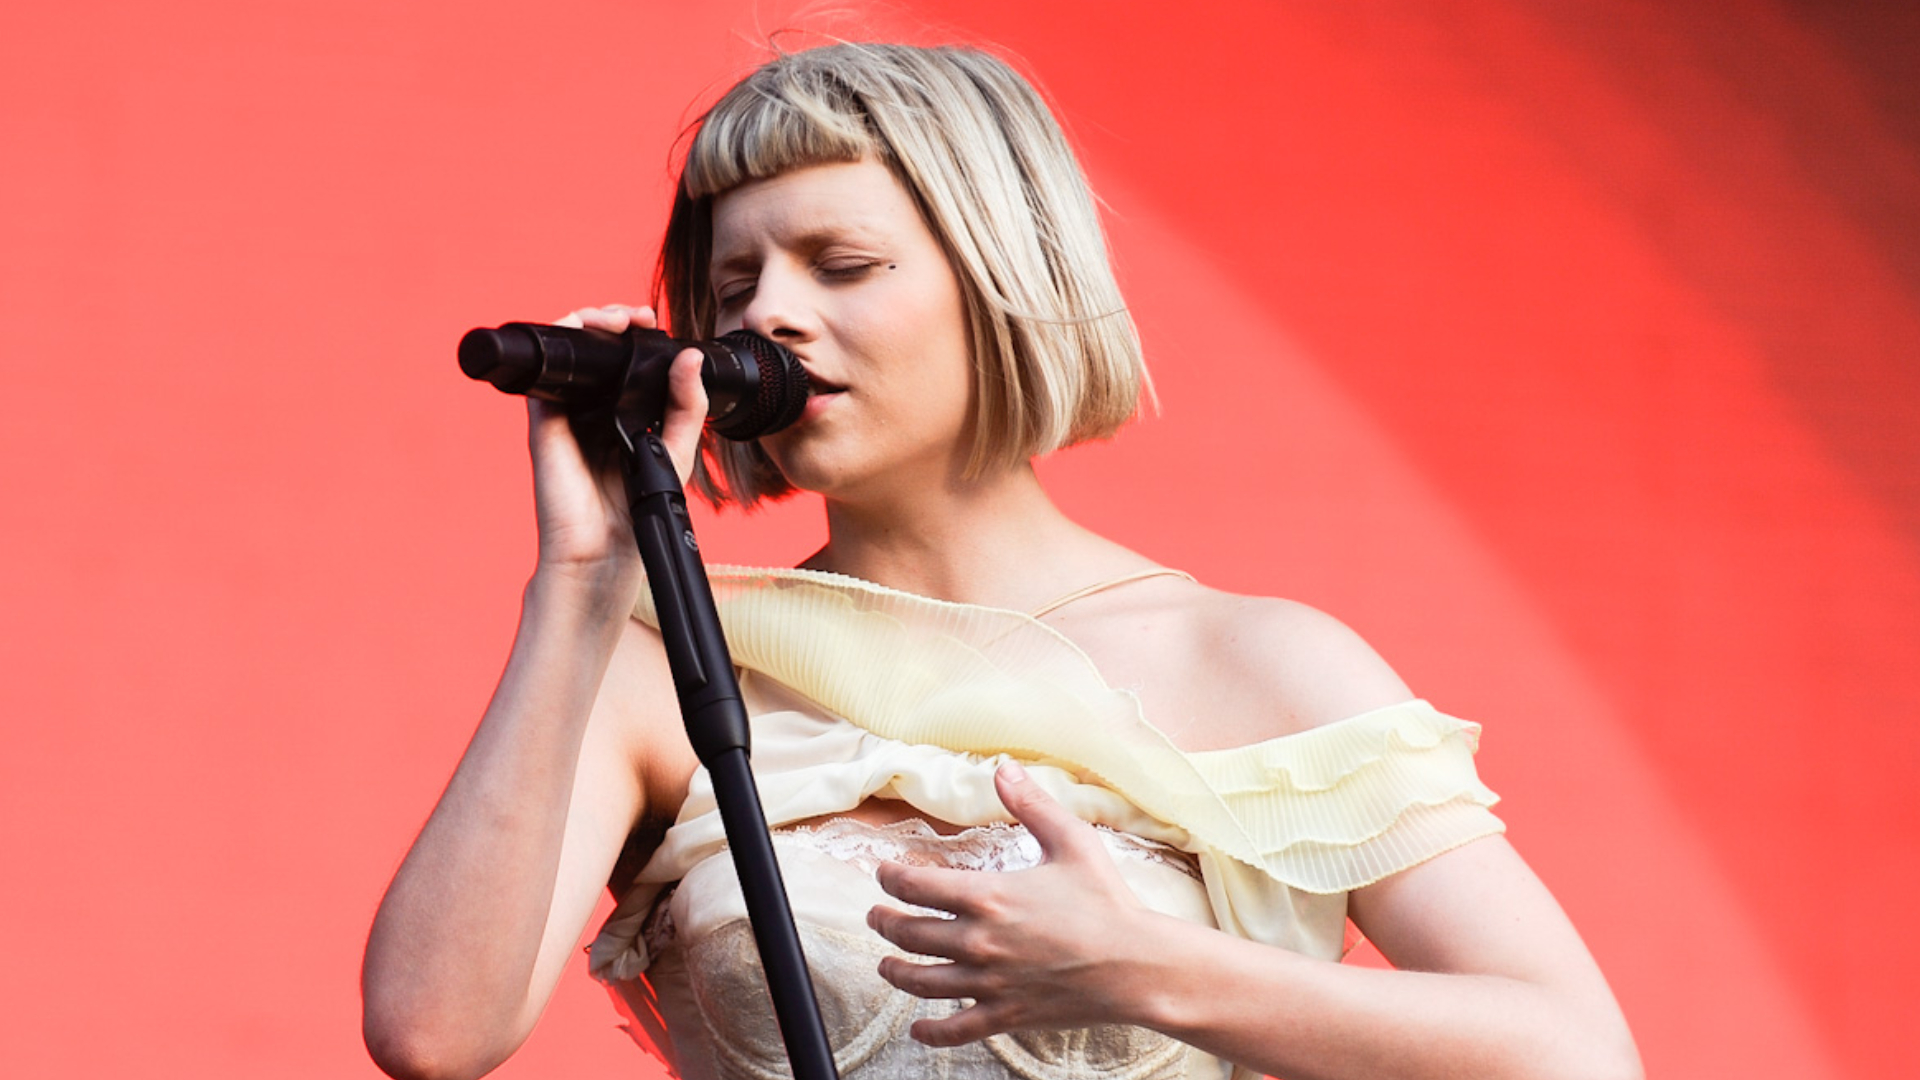 Baterista de Aurora é acusado de fazer gesto racista no Lollapalooza, mas nega: “Triste e perturbador”; cantora também se pronuncia